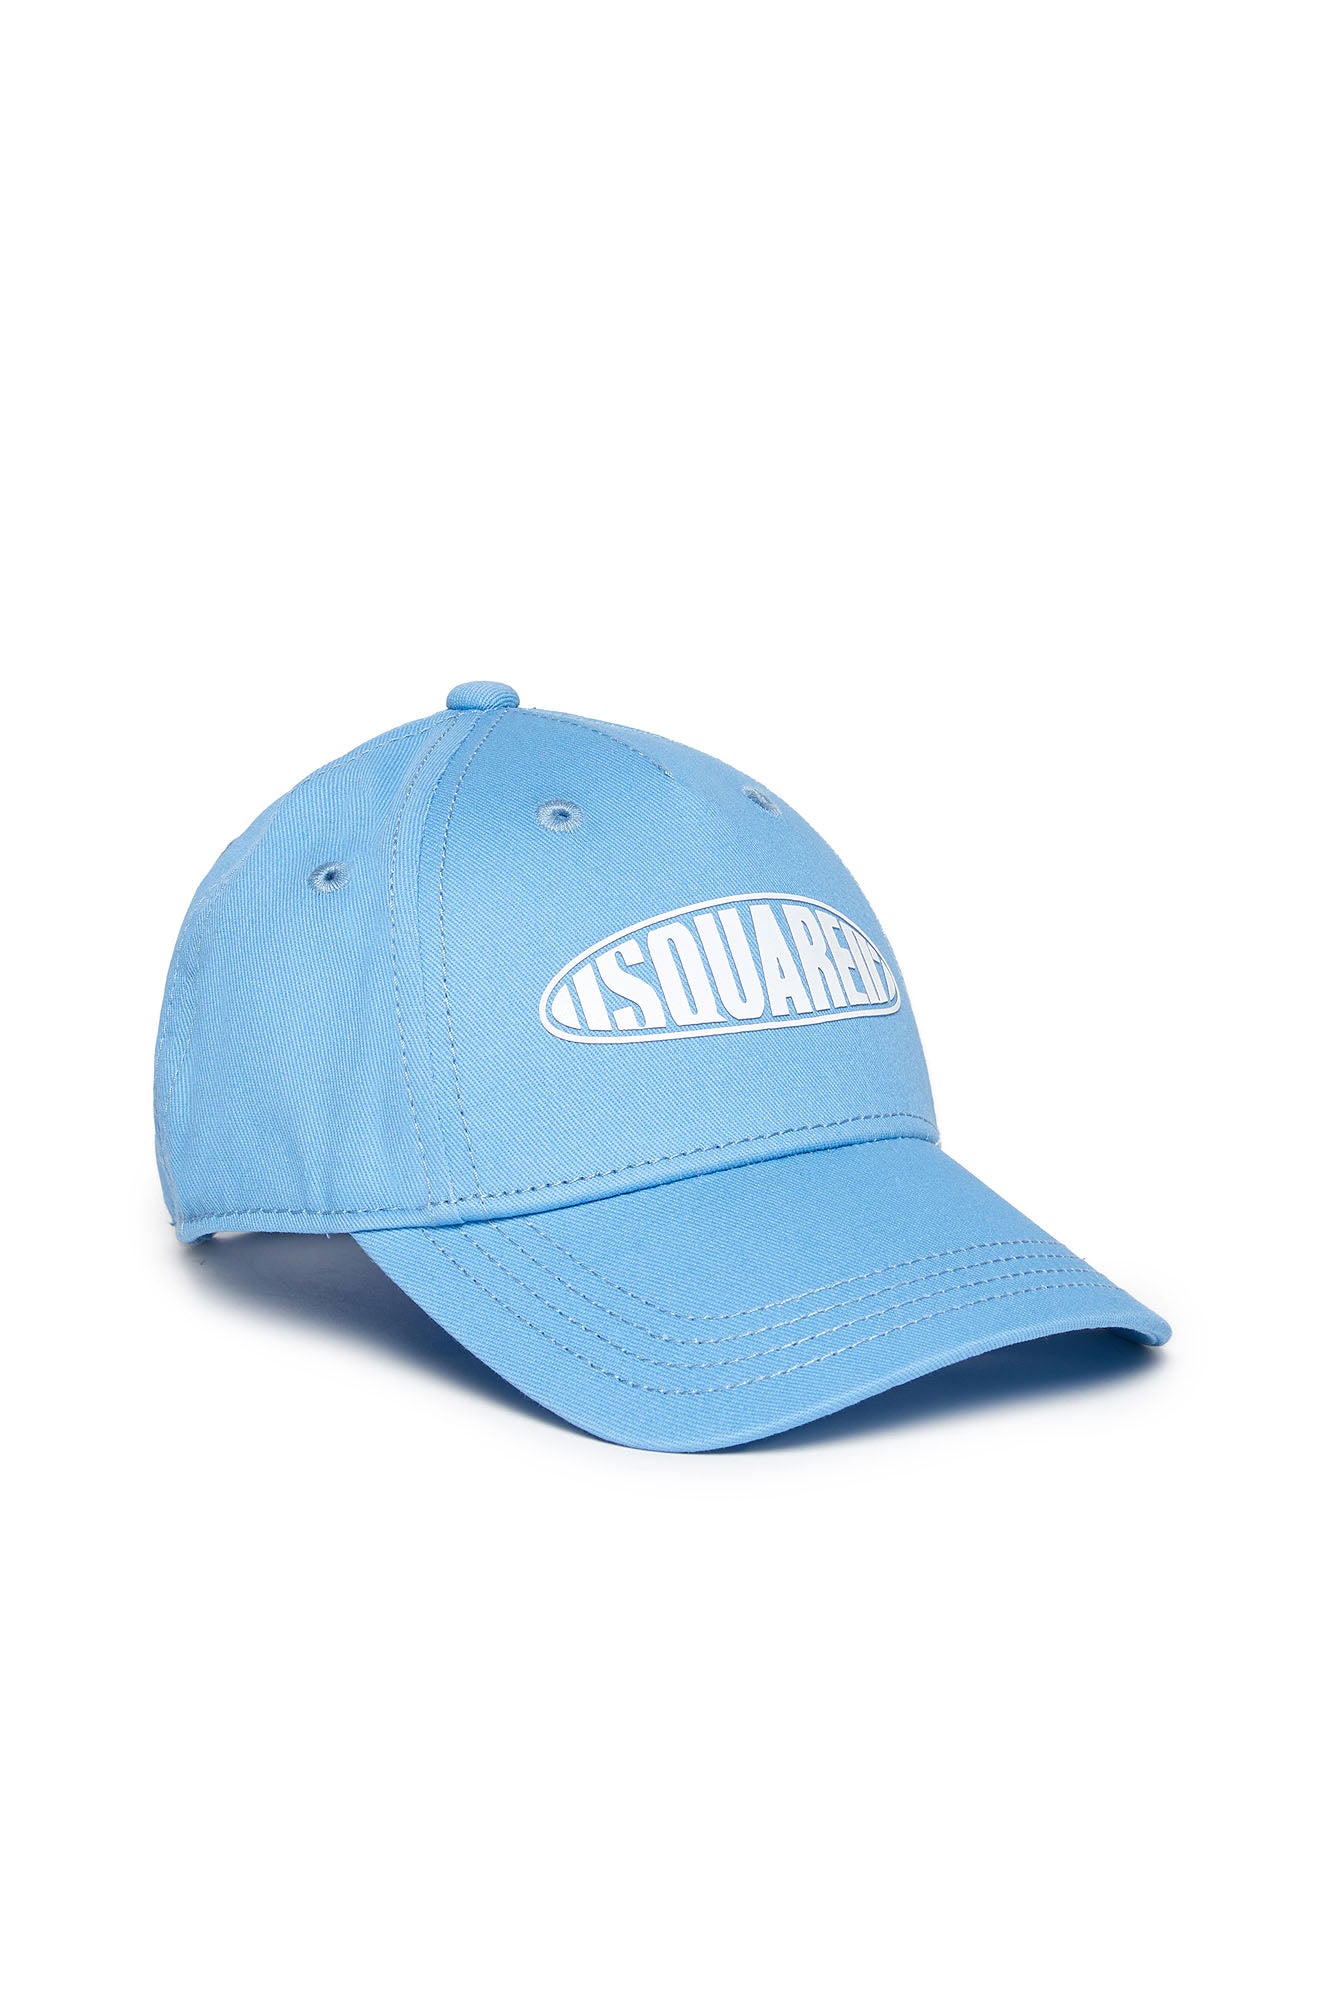 DSQUARED2-Cappello Unisex Bambino Patch Logo-Azzurro